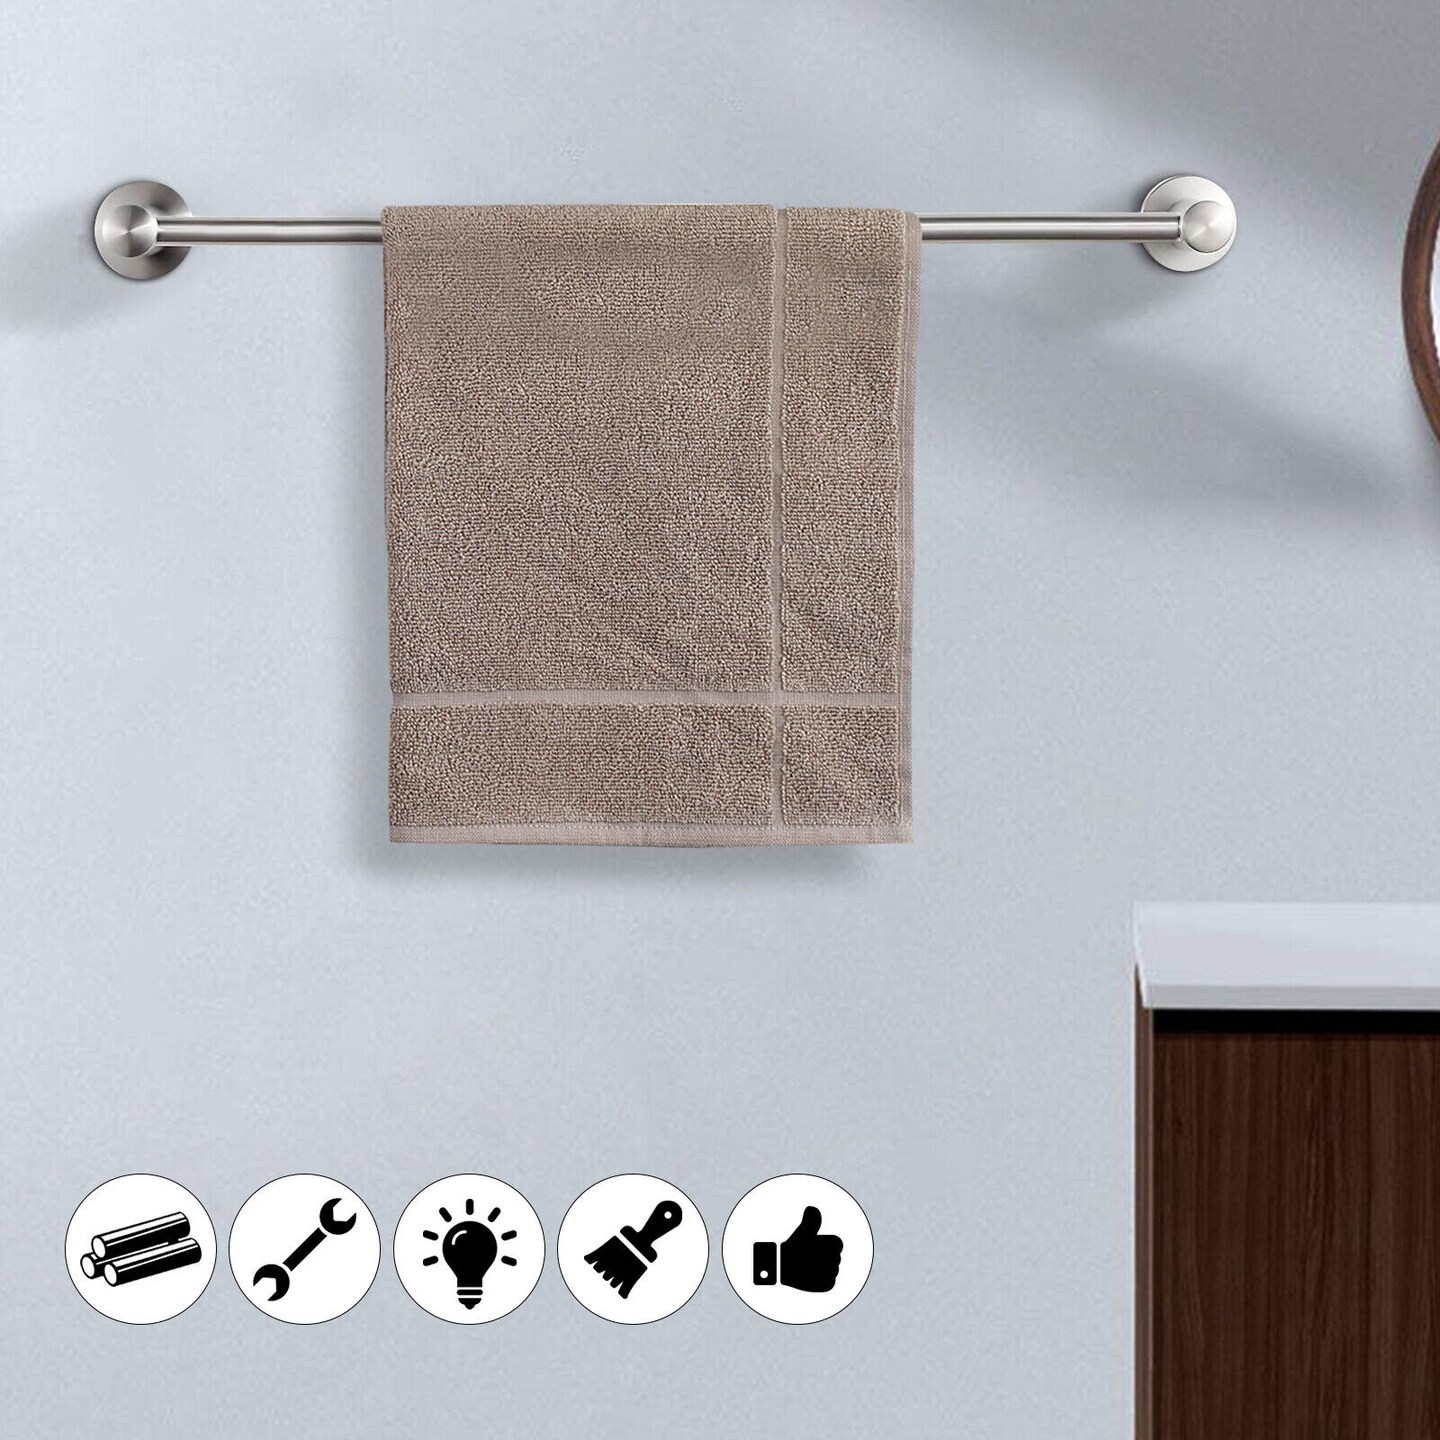 Kitcheniva Adjustable Bathroom Towel Holder Wall Mount Bar